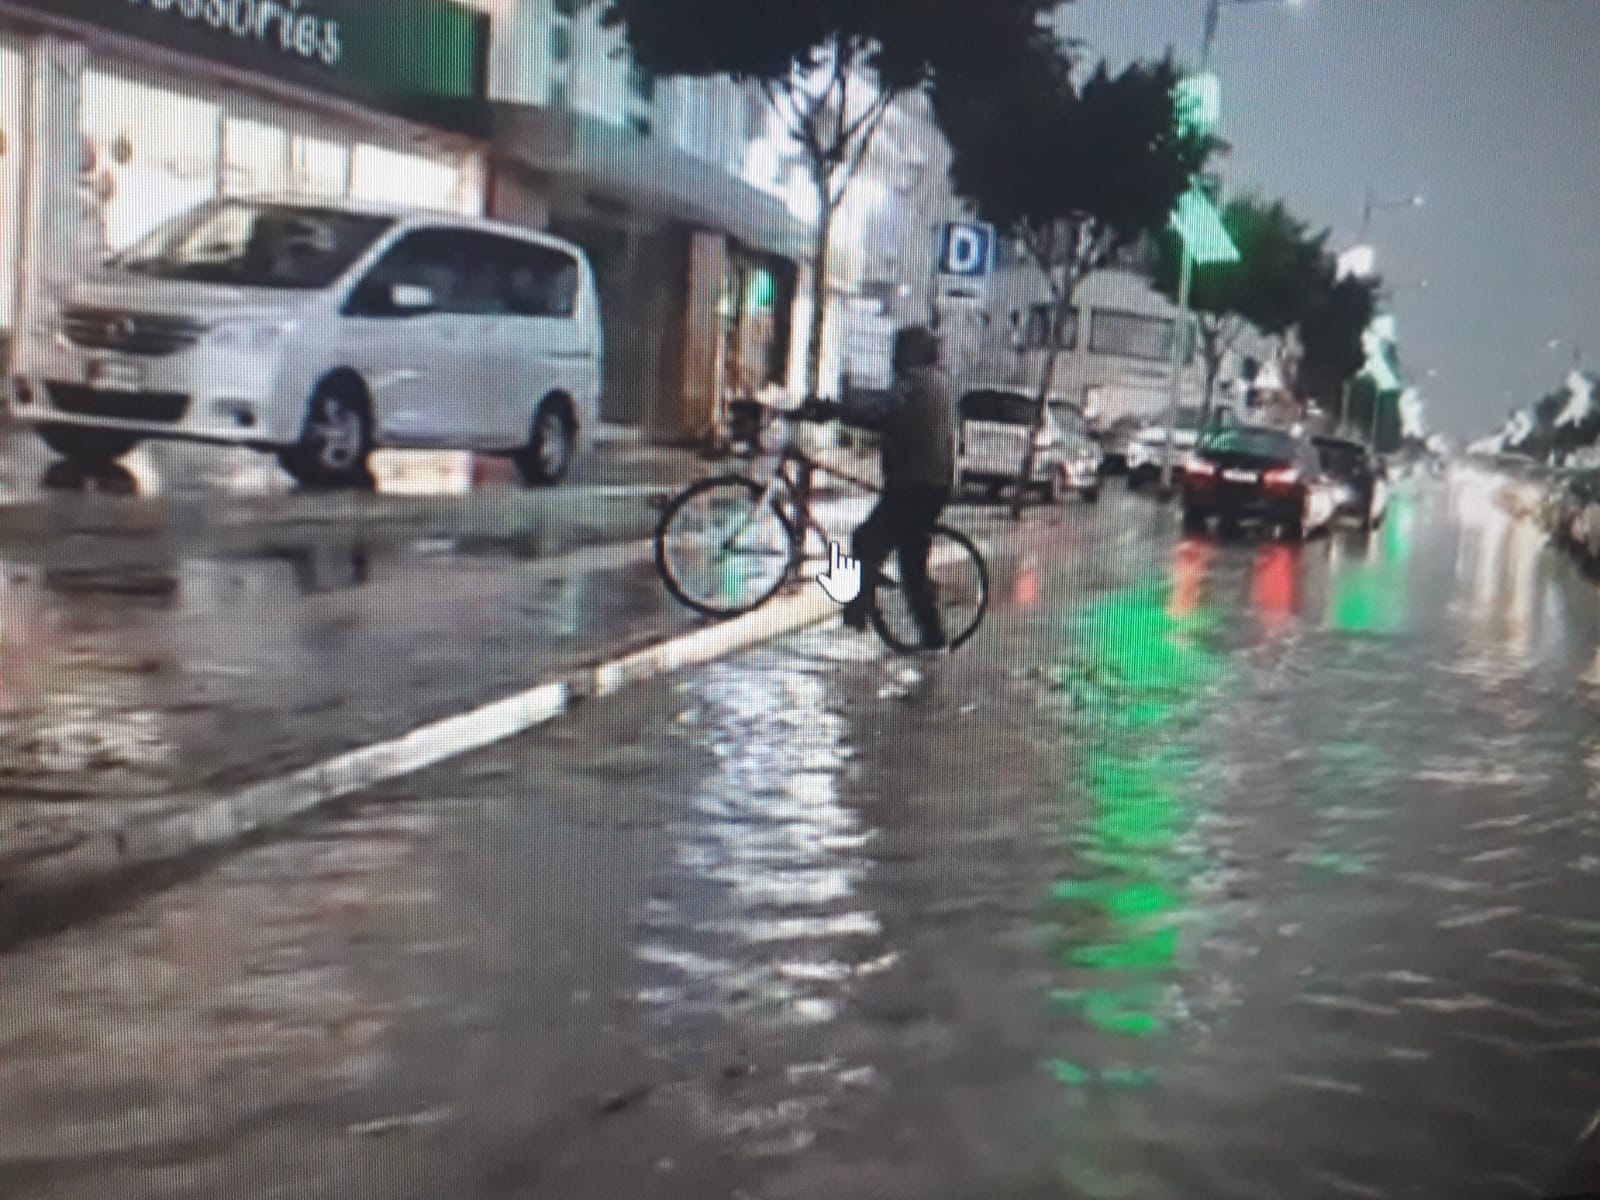 Şiddetli yağış nedeniyle Ortaköy’de su taşkını. Lemar ışıklarından Hastane yönüne yol trafiğe kapandı